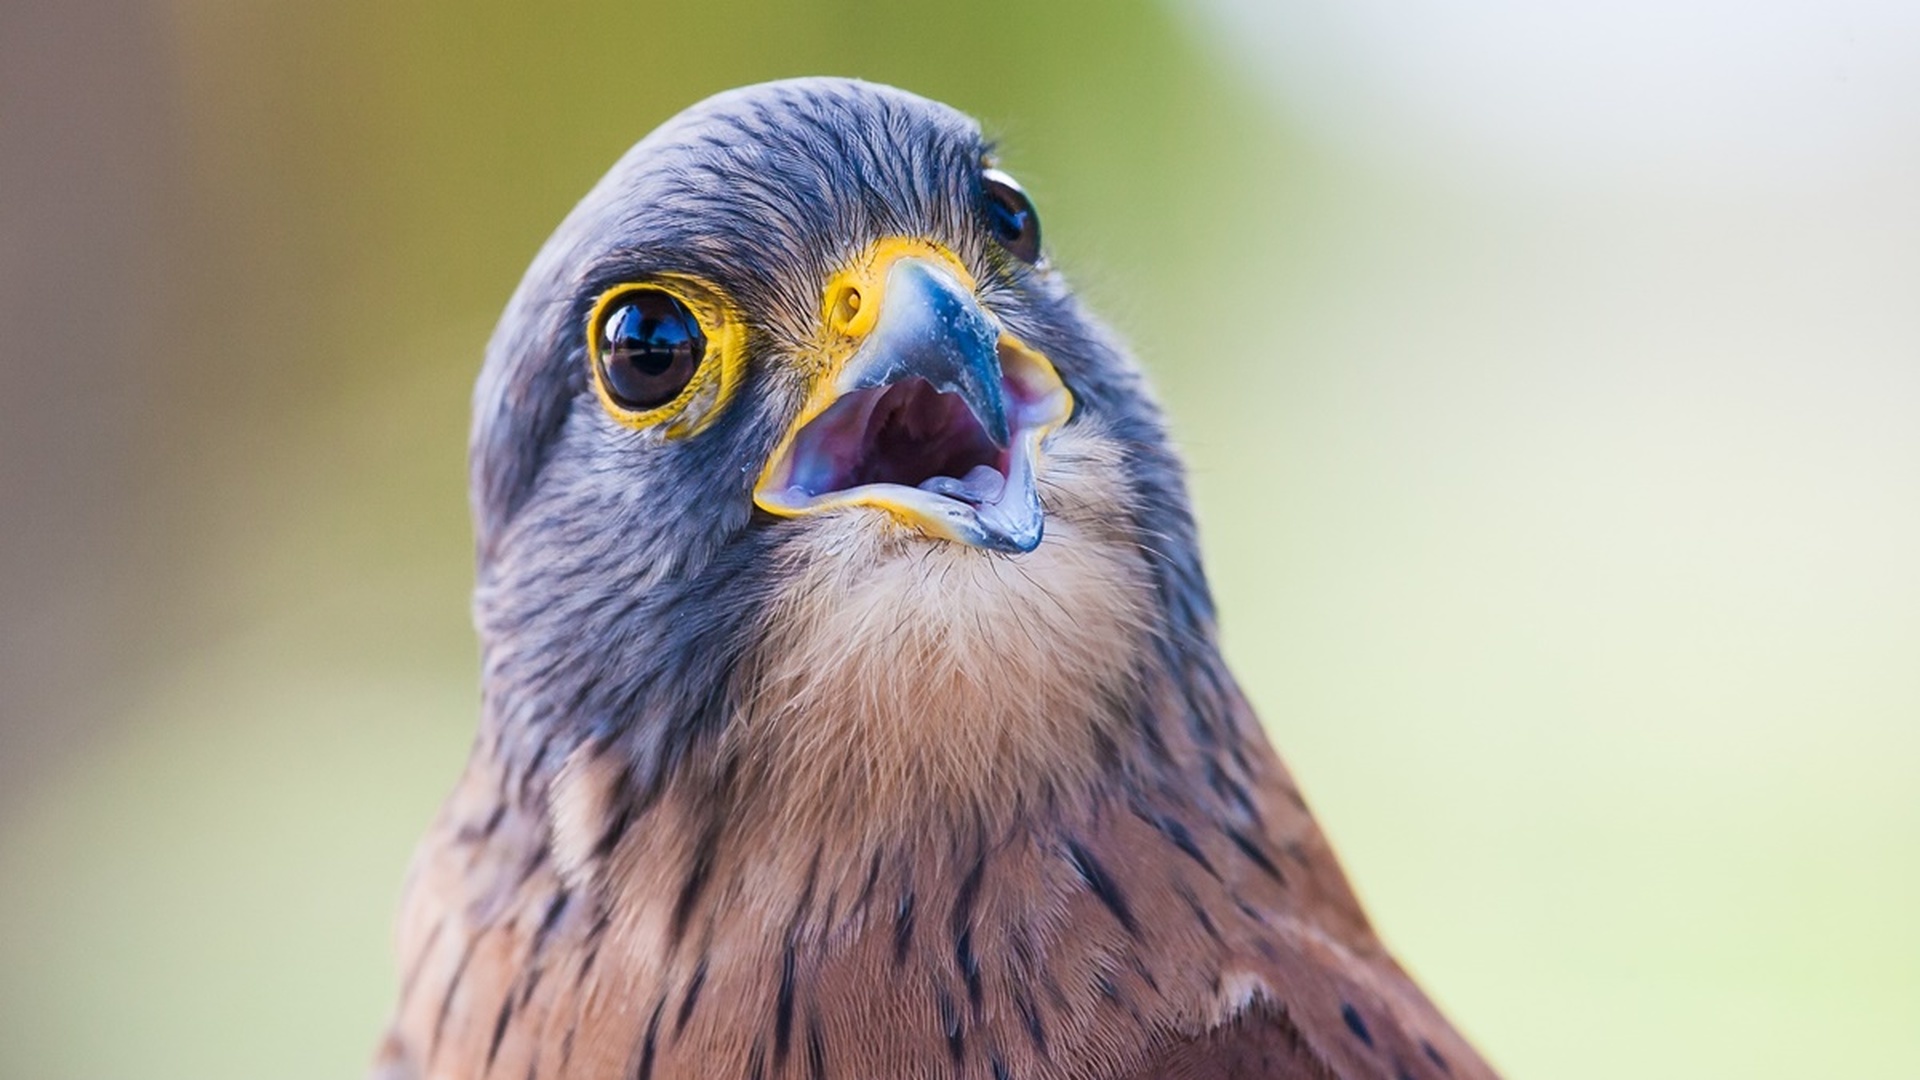 Камера с "птичьим зрением" позволила взглянуть на мир глазами пернатых